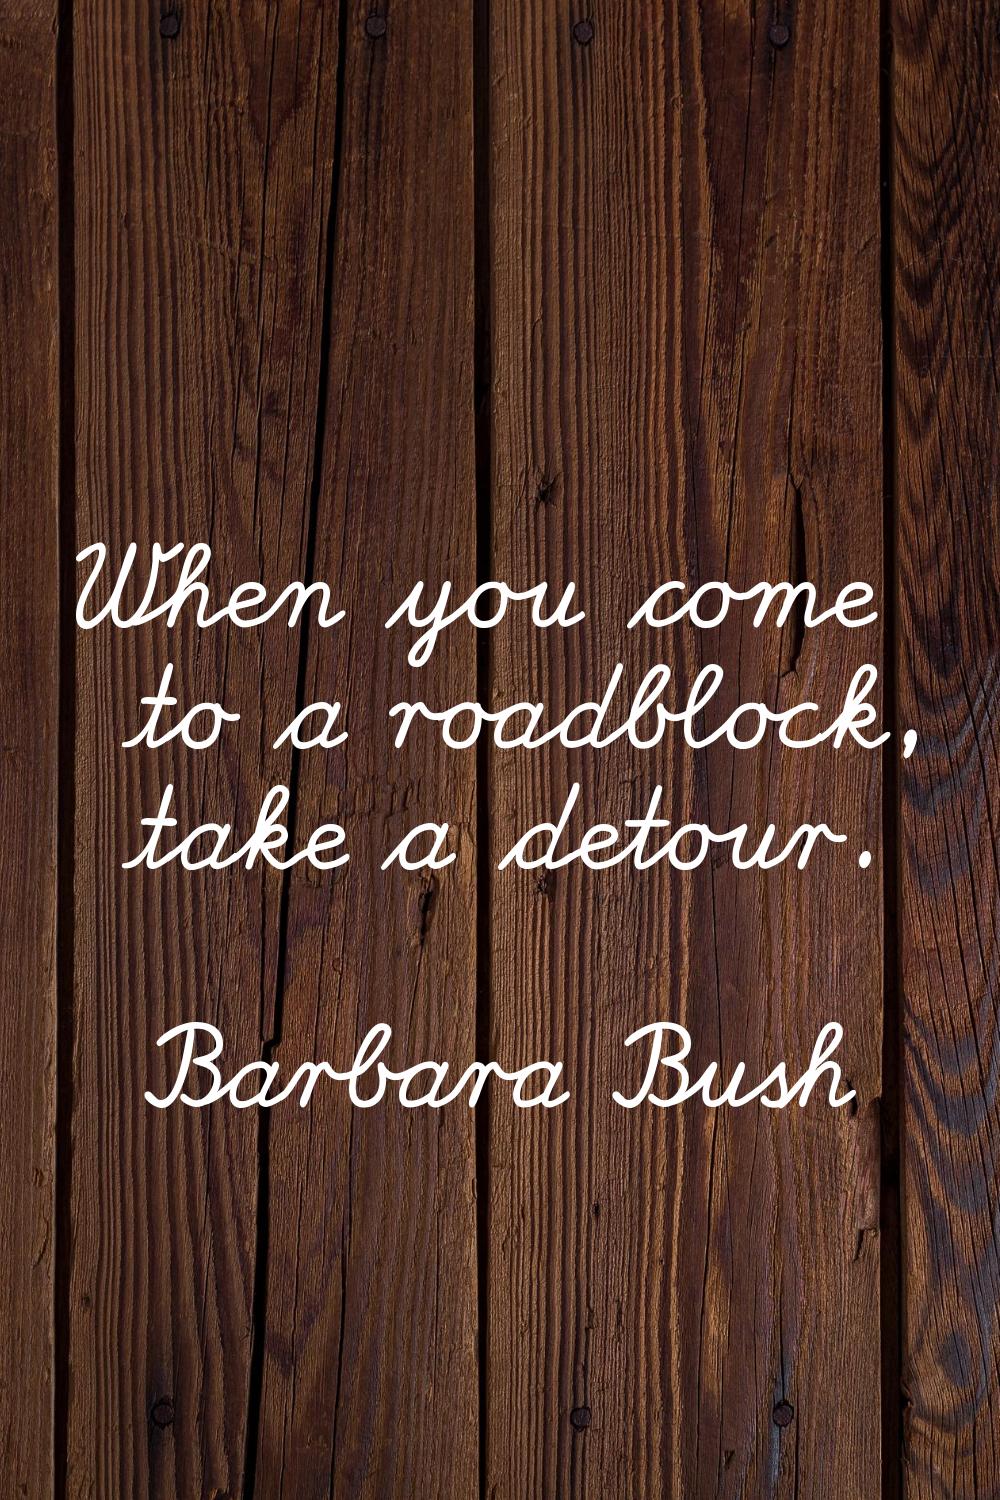 When you come to a roadblock, take a detour.